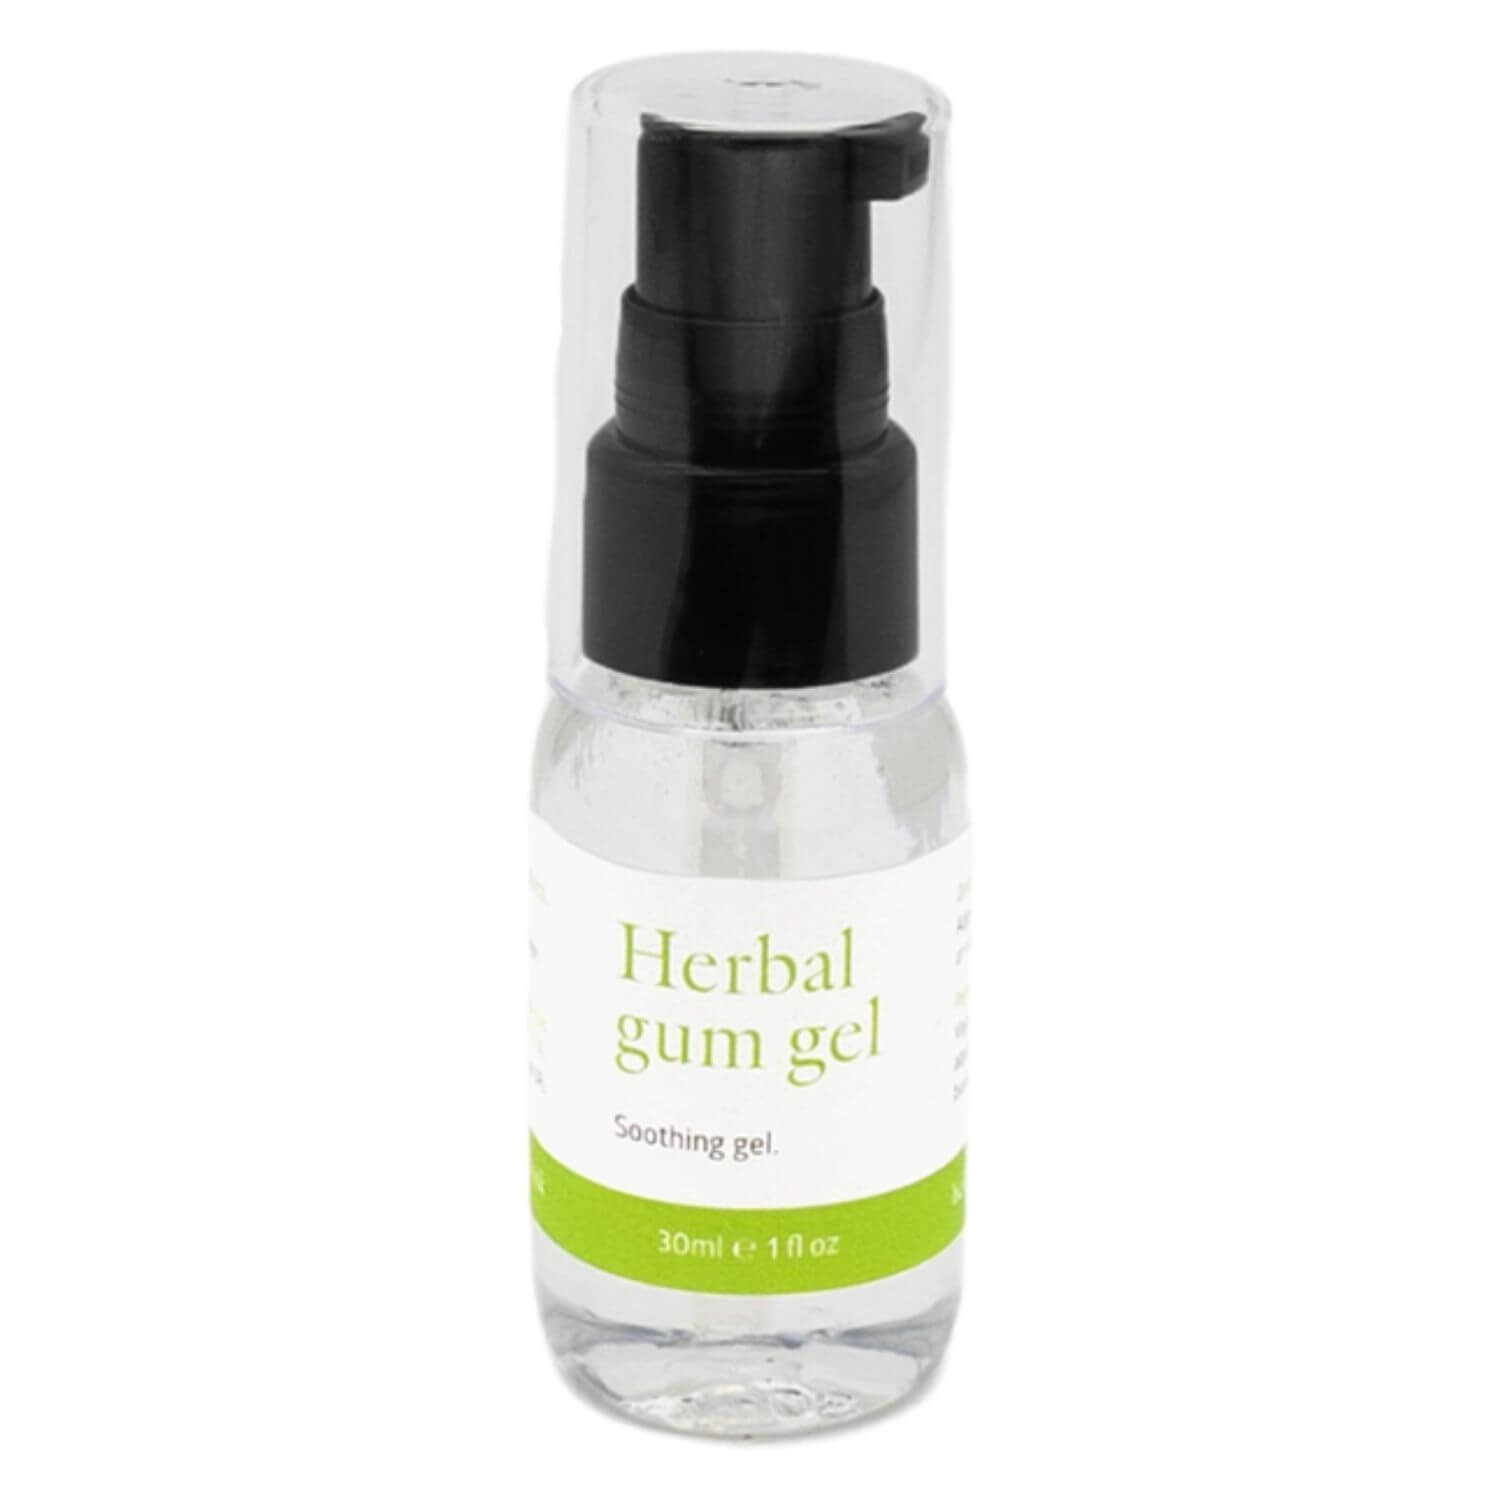 Herbal Pet Supplies | Herbal Gum Gel